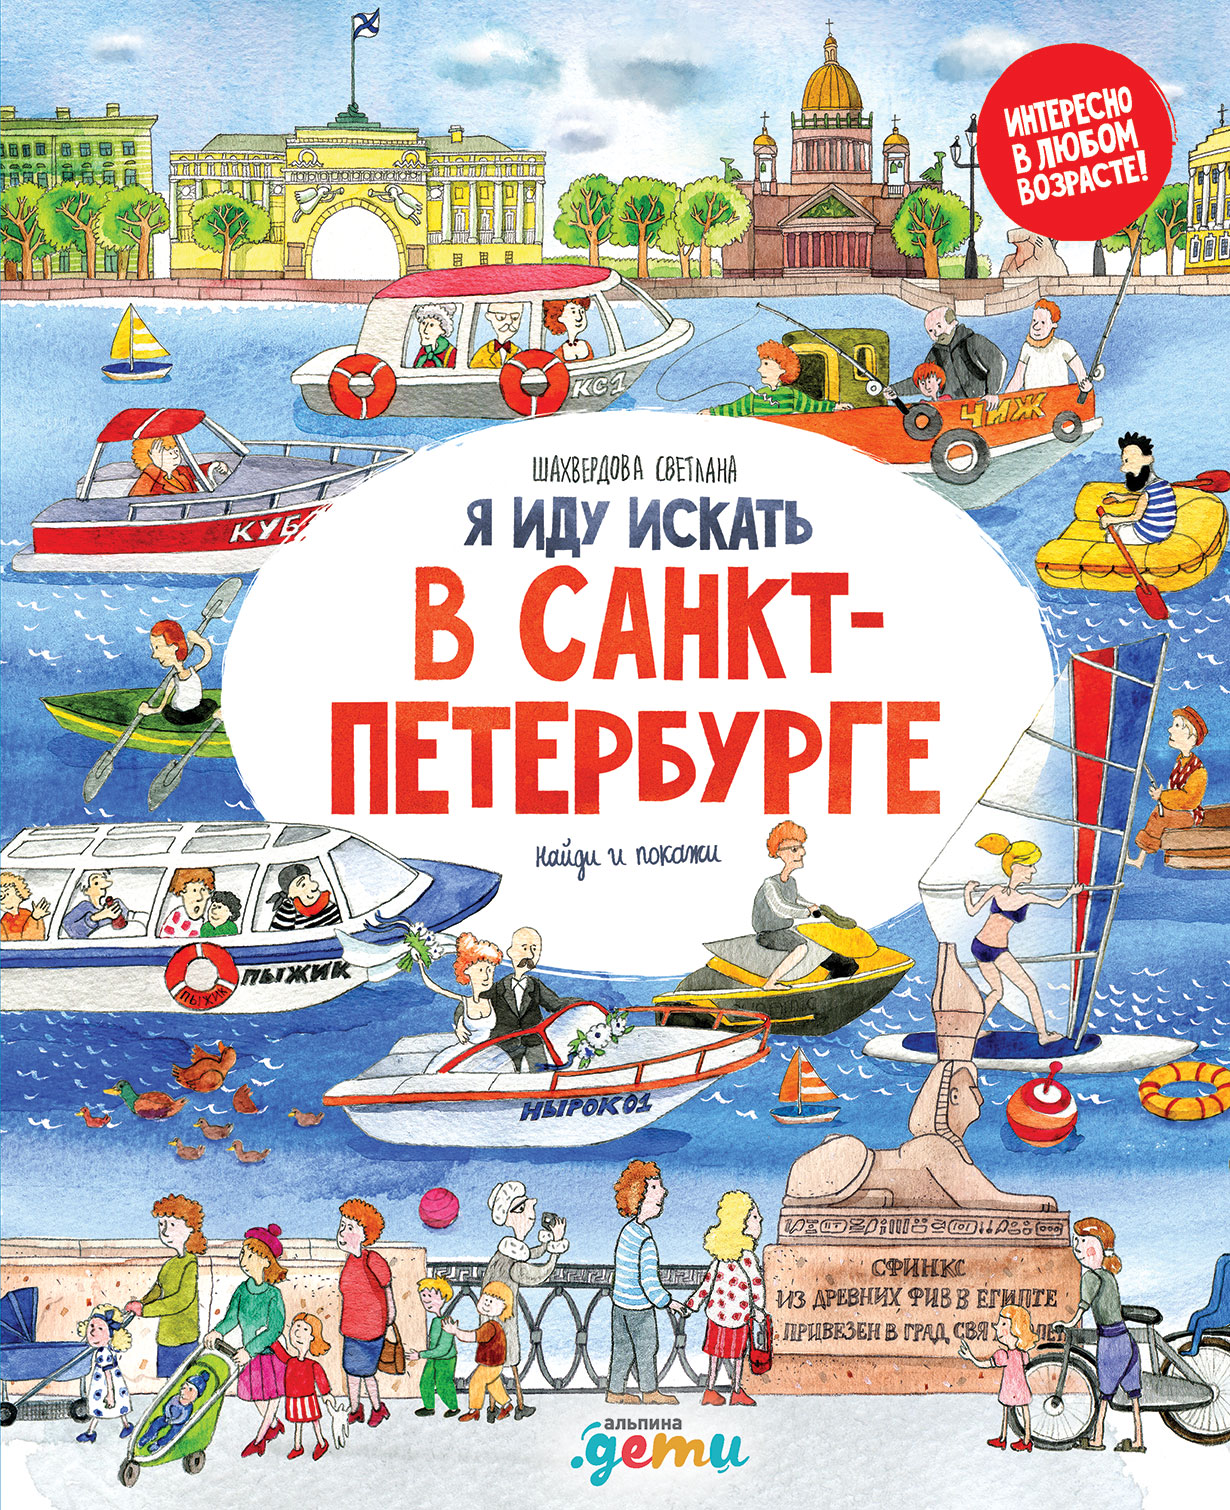 Я иду искать в Санкт-Петербурге обложка.